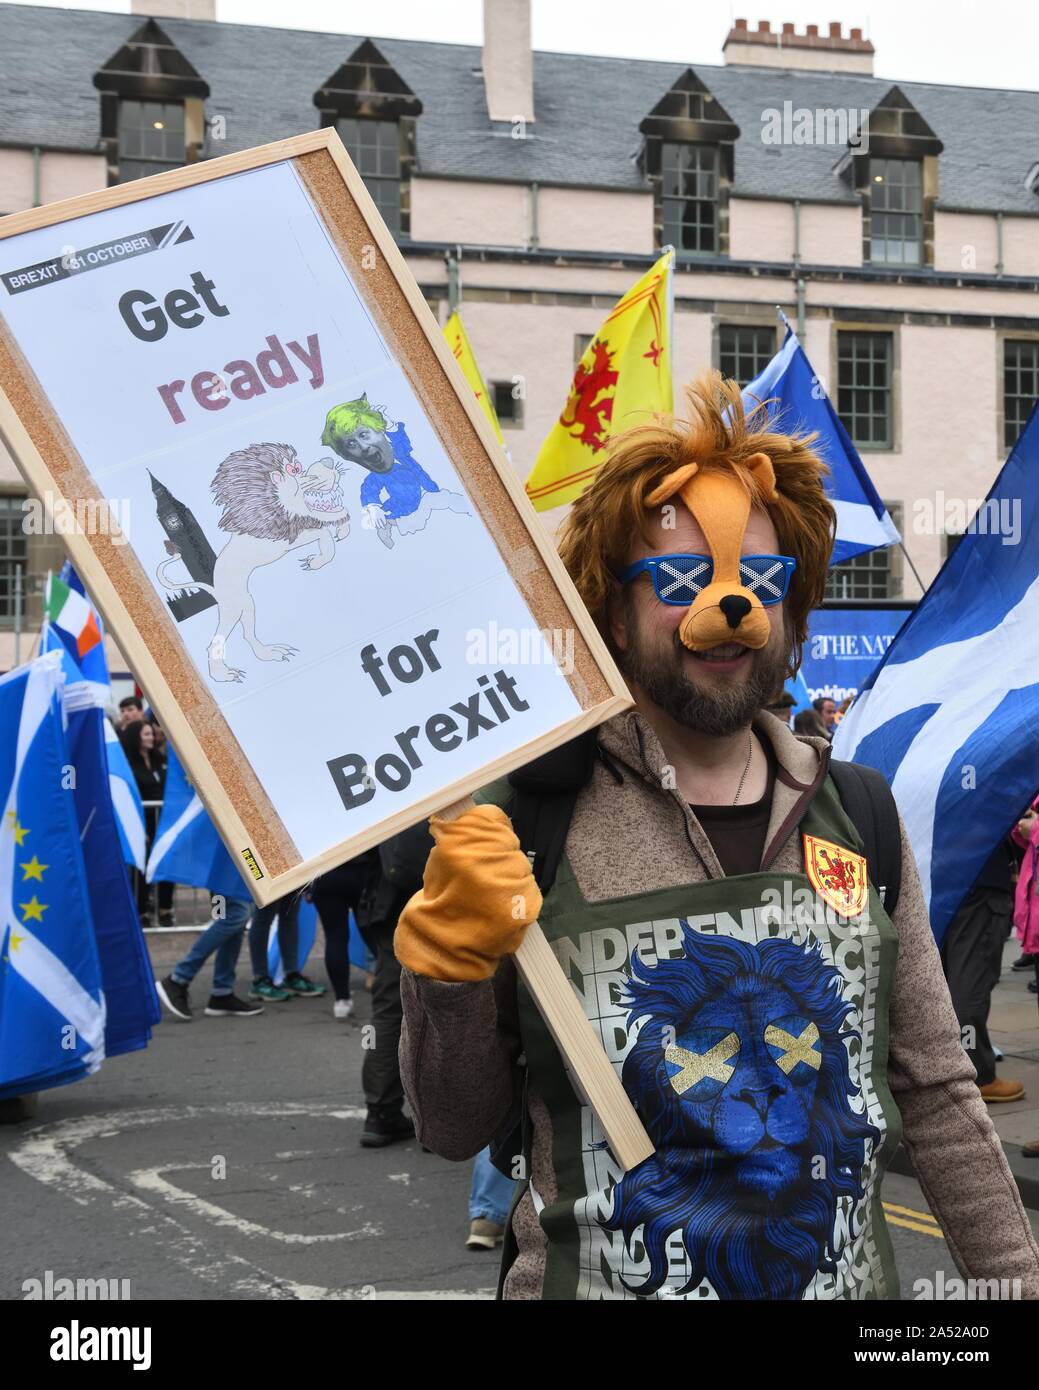 Plakat mit schottischen Demonstrant warnen vor Britische Regierung europäischen Ausfahrt (brexit) Angebot zum März in Edinburgh, Schottland, Großbritannien, Europa Stockfoto